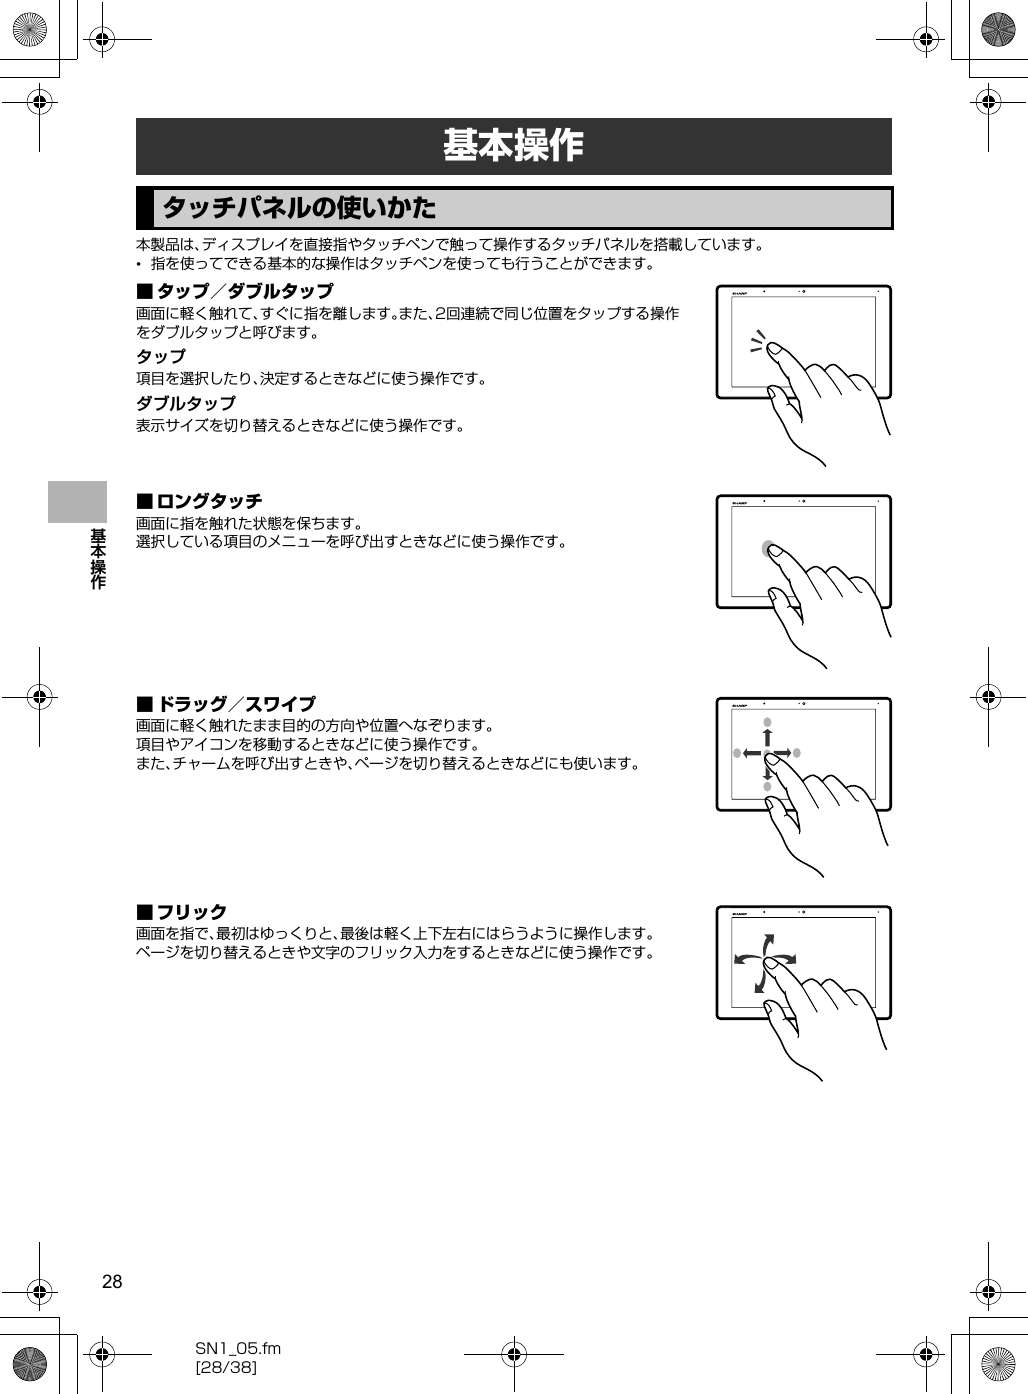 28SN1_05.fm[28/38]基本操作本製品は、ディスプレイを直接指やタッチペンで触って操作するタッチパネルを搭載しています。•指を使ってできる基本的な操作はタッチペンを使っても行うことができます。■ タップ／ダブルタップ画面に軽く触れて、すぐに指を離します。また、2回連続で同じ位置をタップする操作をダブルタップと呼びます。タップ項目を選択したり、決定するときなどに使う操作です。ダブルタップ表示サイズを切り替えるときなどに使う操作です。■ ロングタッチ画面に指を触れた状態を保ちます。選択している項目のメニューを呼び出すときなどに使う操作です。■ ドラッグ／スワイプ画面に軽く触れたまま目的の方向や位置へなぞります。項目やアイコンを移動するときなどに使う操作です。また、チャームを呼び出すときや、ページを切り替えるときなどにも使います。■ フリック画面を指で、最初はゆっくりと、最後は軽く上下左右にはらうように操作します。ページを切り替えるときや文字のフリック入力をするときなどに使う操作です。基本操作タッチパネルの使いかた